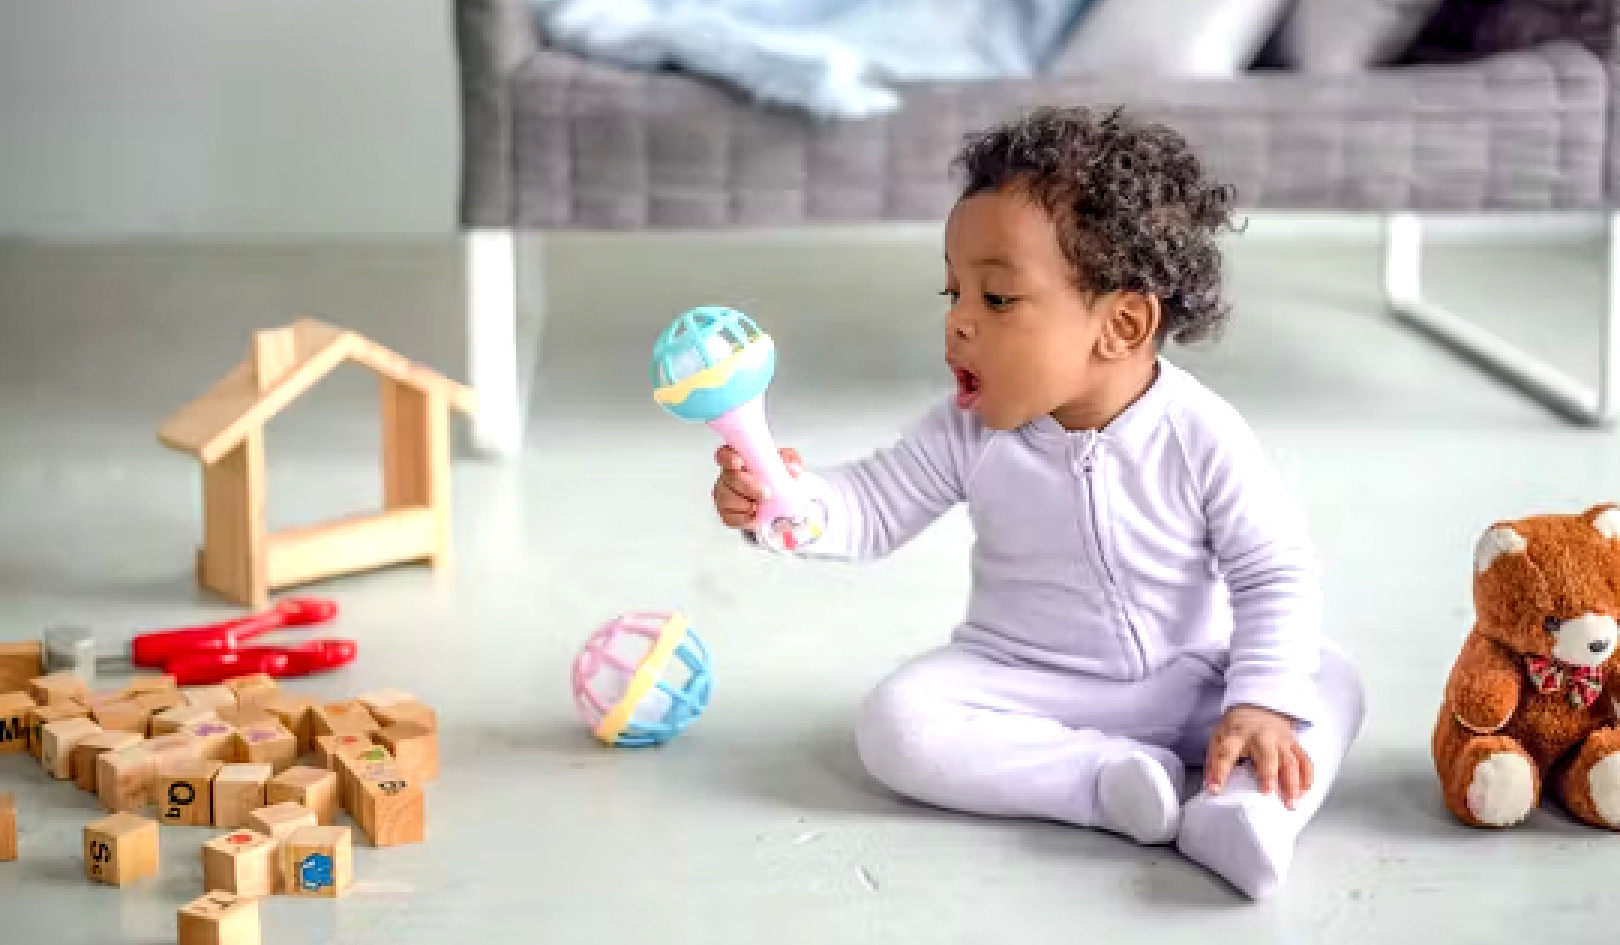 Scegliere il giocattolo per bambini giusto: suggerimenti supportati dalla scienza per il divertimento e lo sviluppo